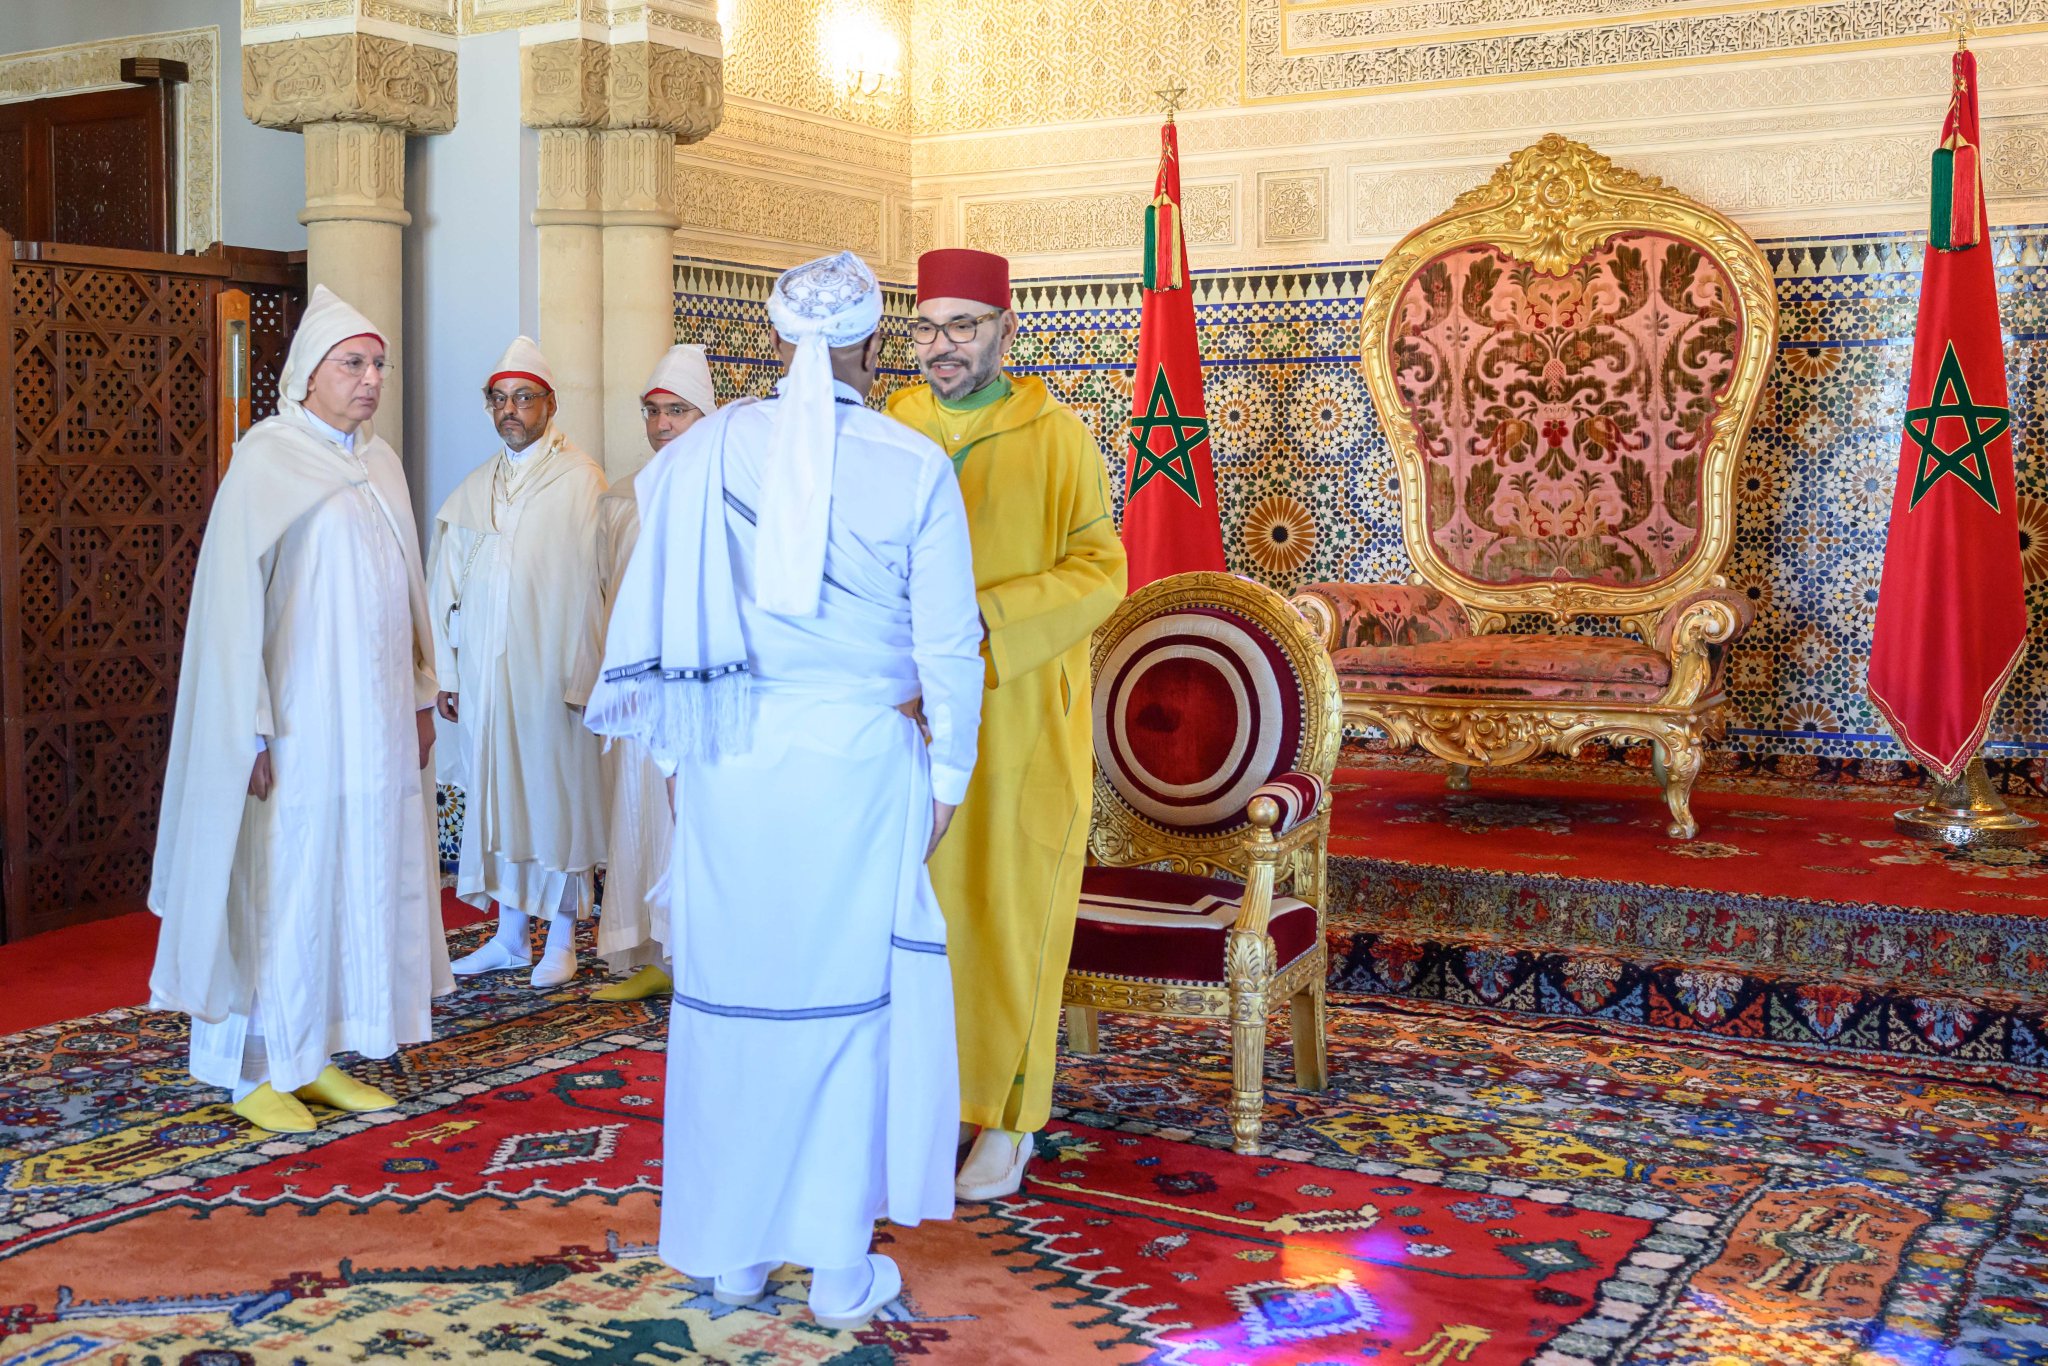 جلالة الملك يعين سفراء جدد بالمملكة بمنظار العلاقات الدولية الجديد للمغرب